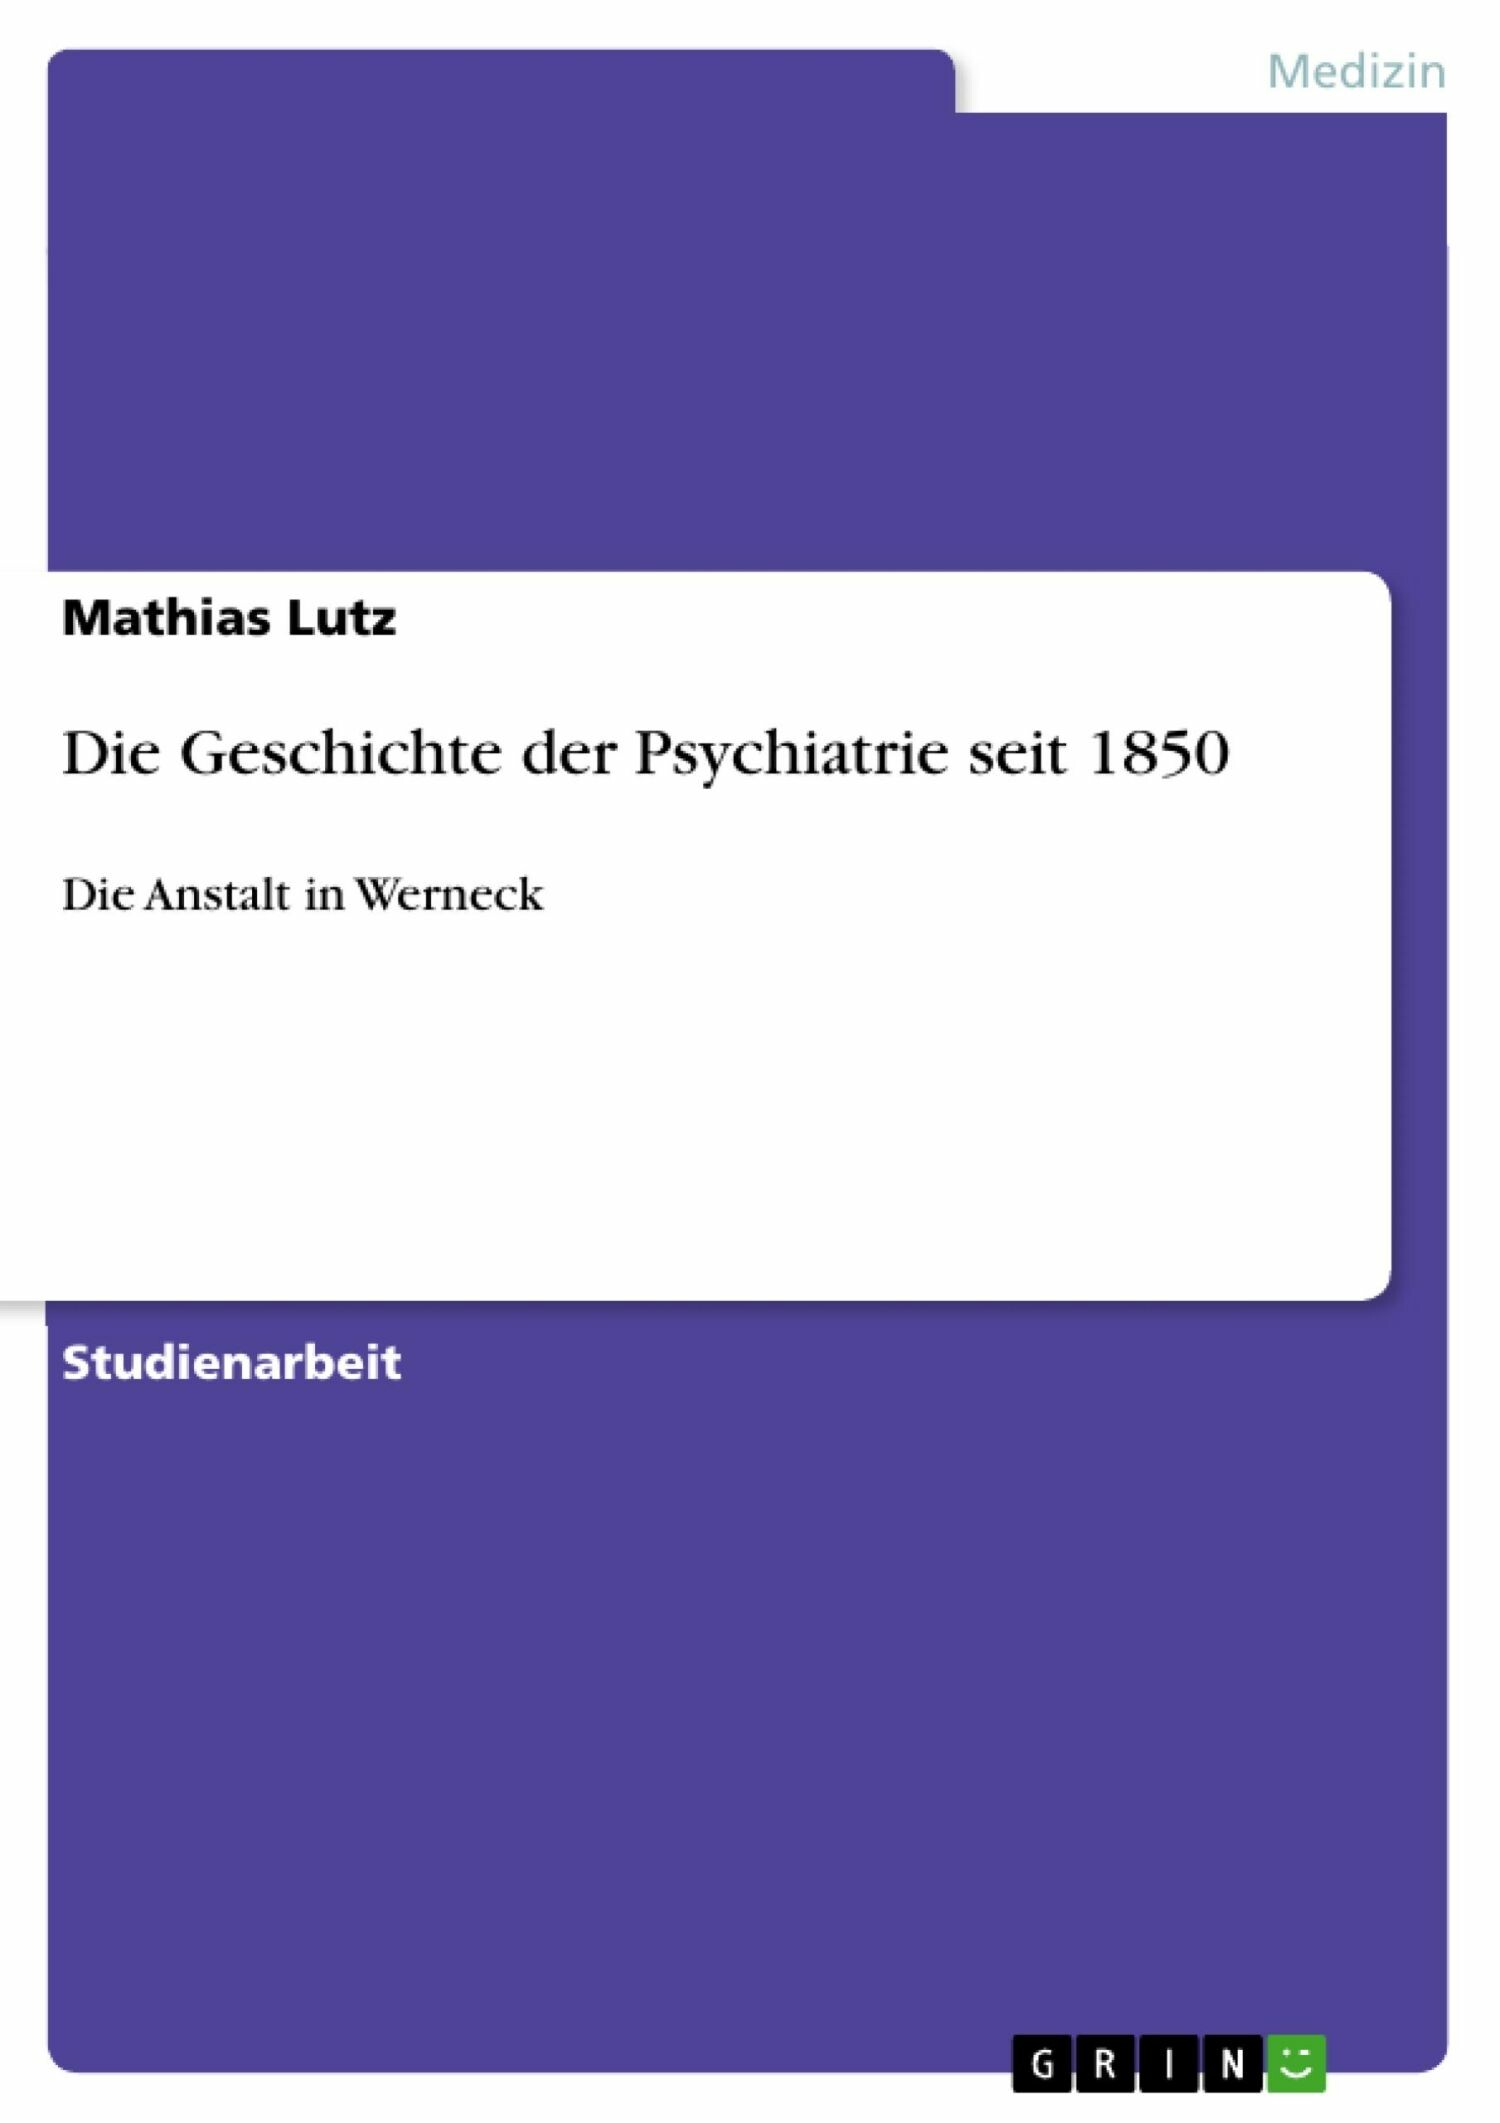 Die Geschichte der Psychiatrie seit 1850